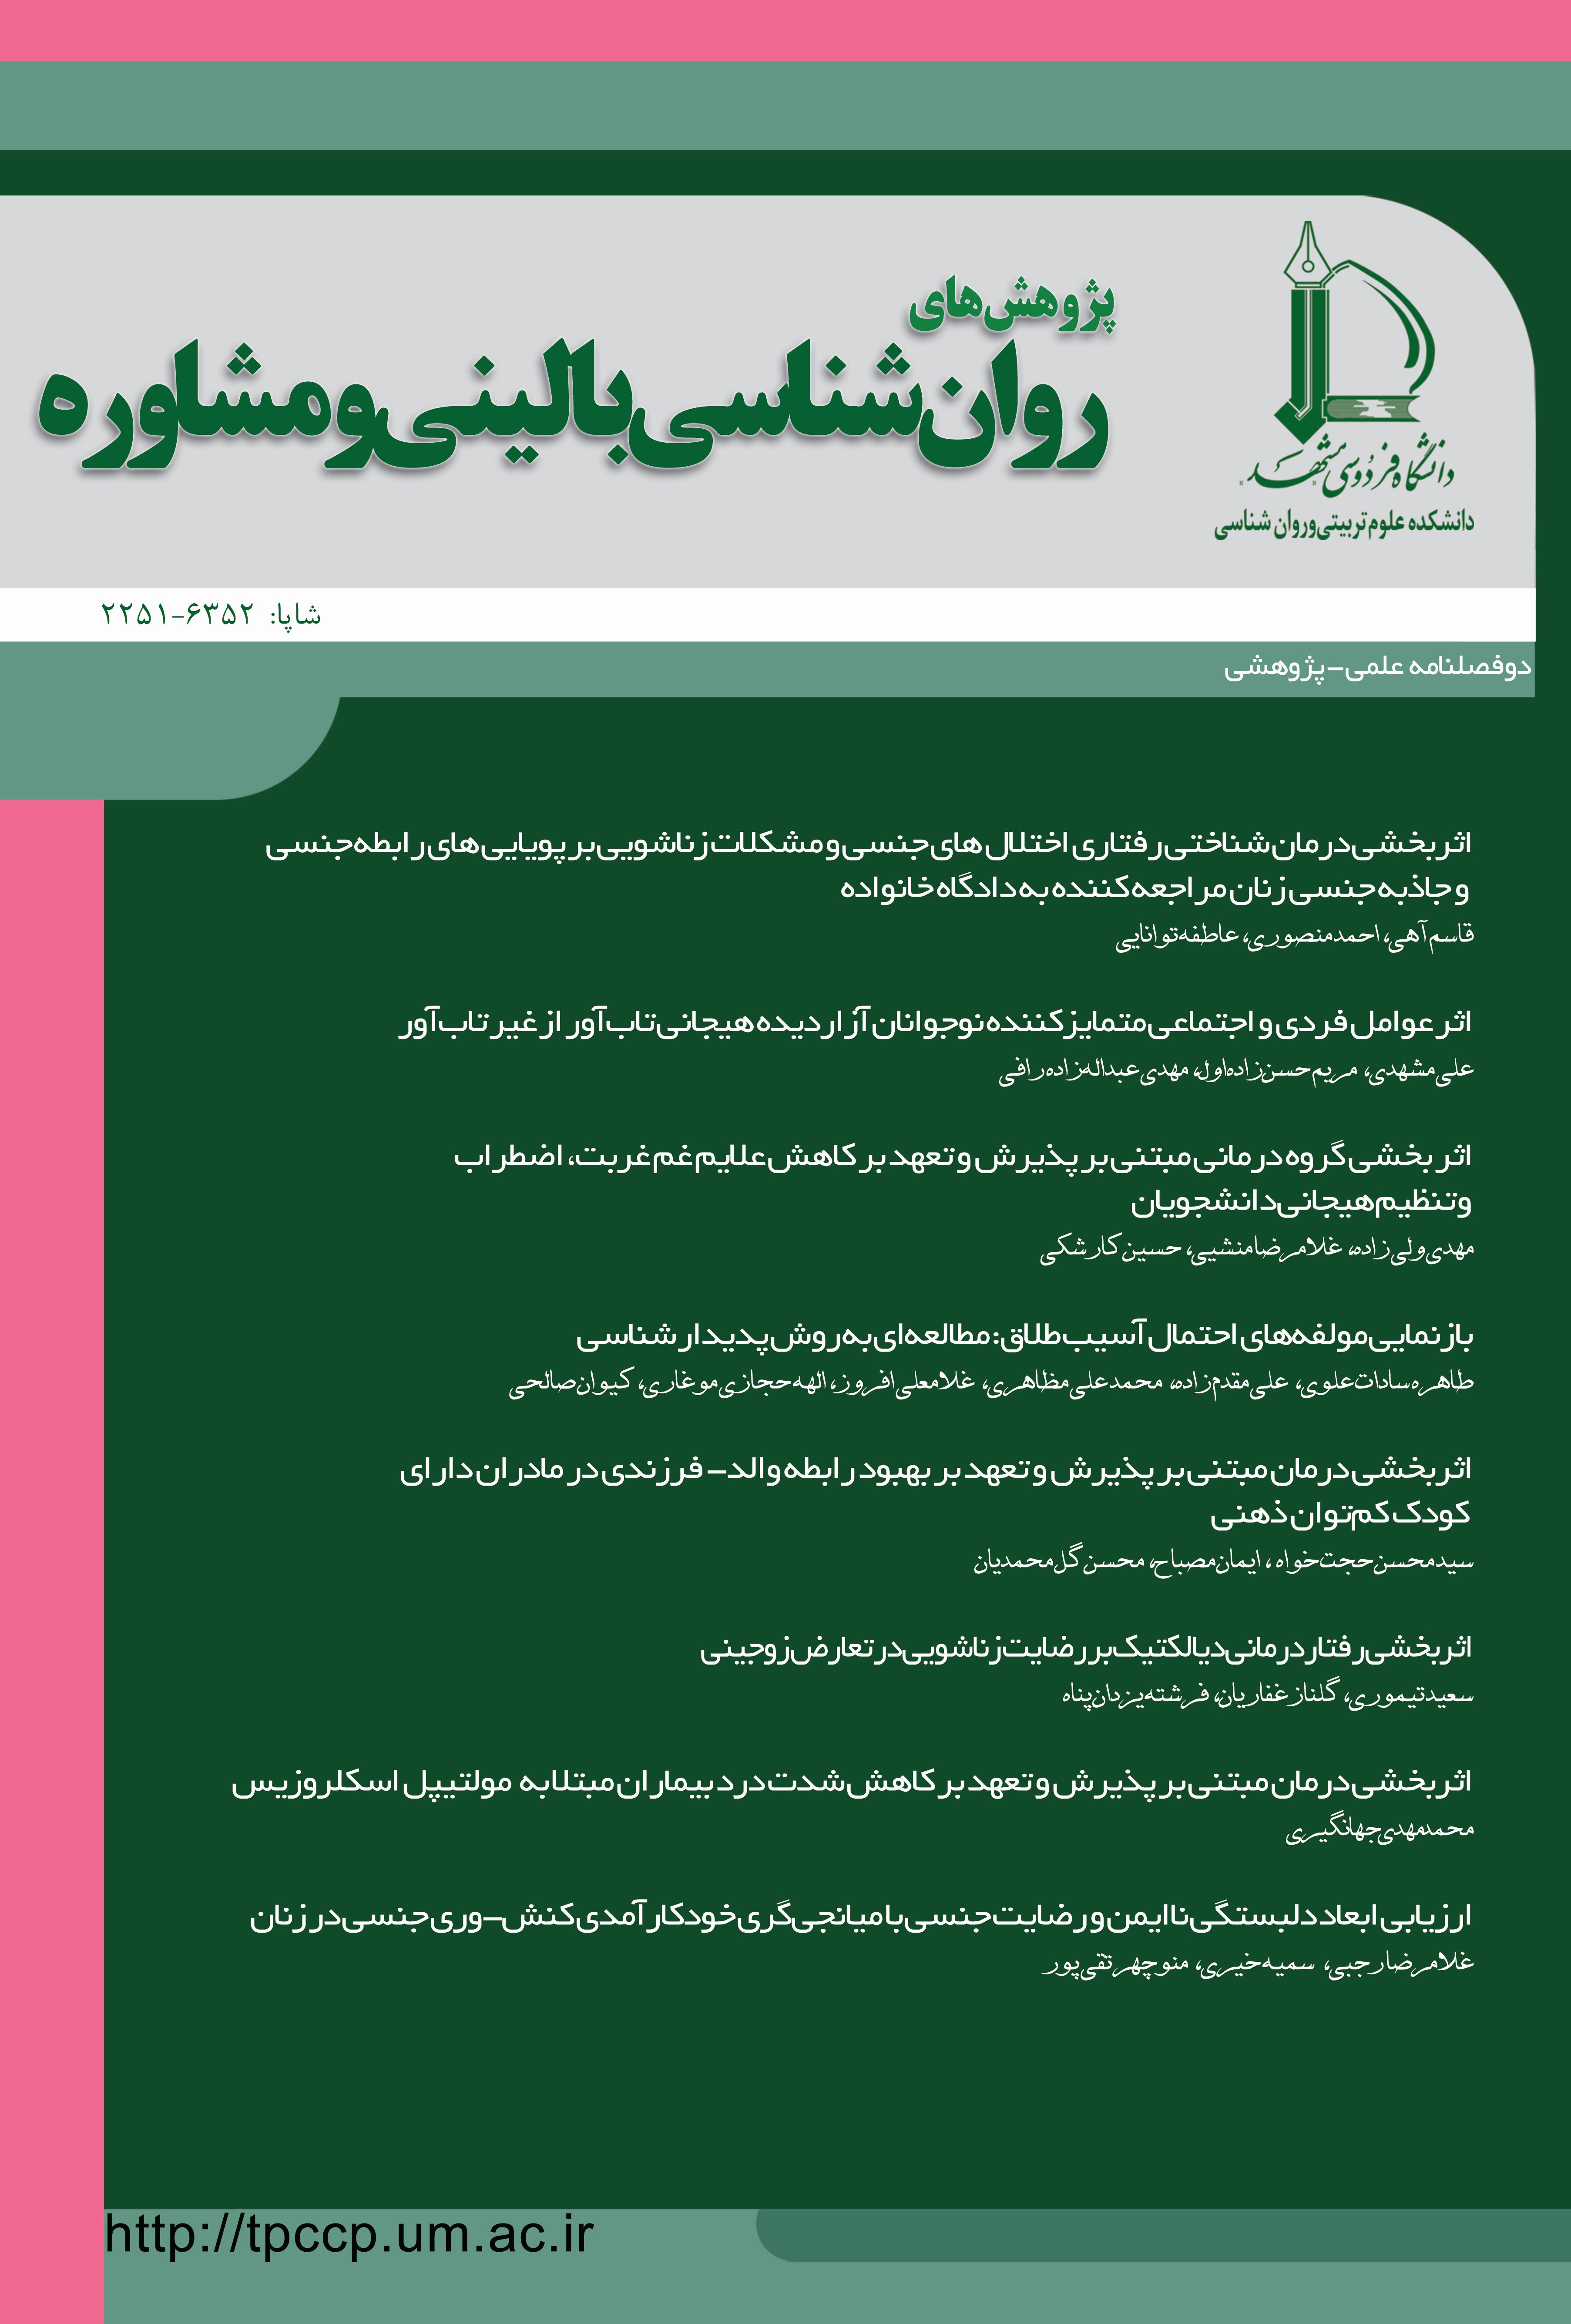 مجله روانشناسی بالینی دانشگاه مشهد
